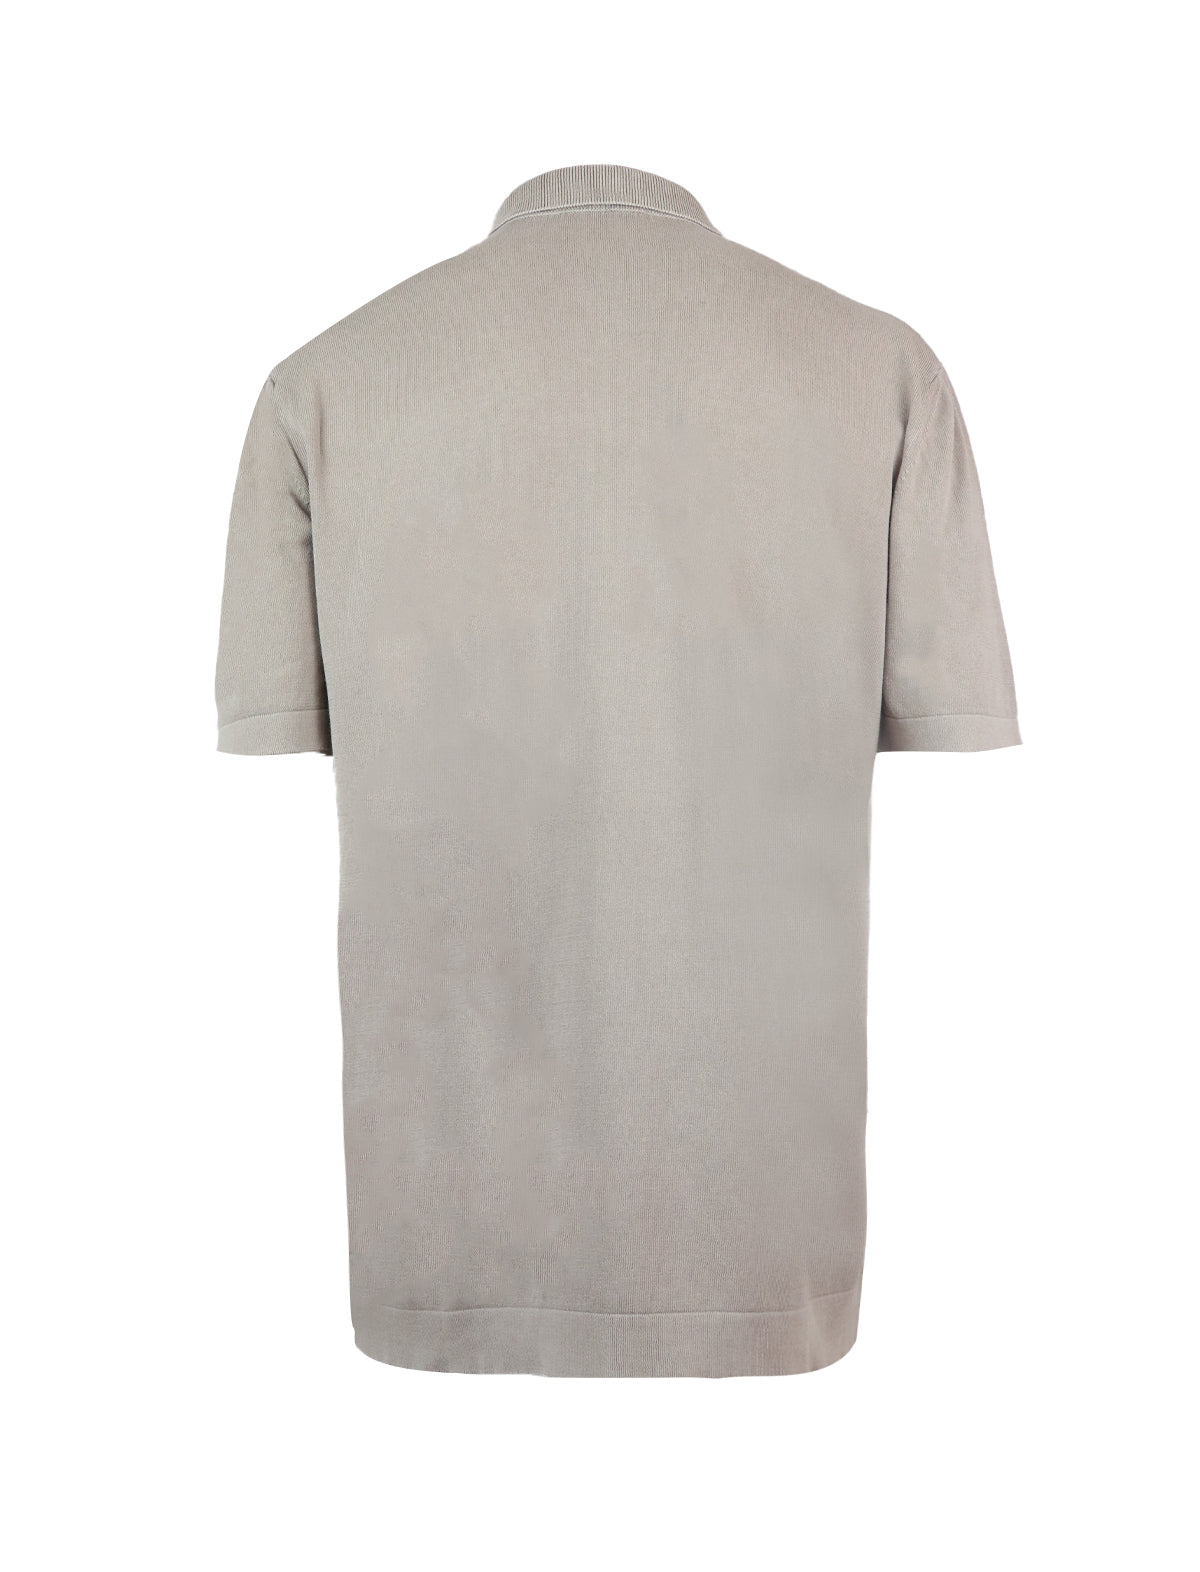 CIRCOLO 1901 Cotton Polo Shirt in Khaki